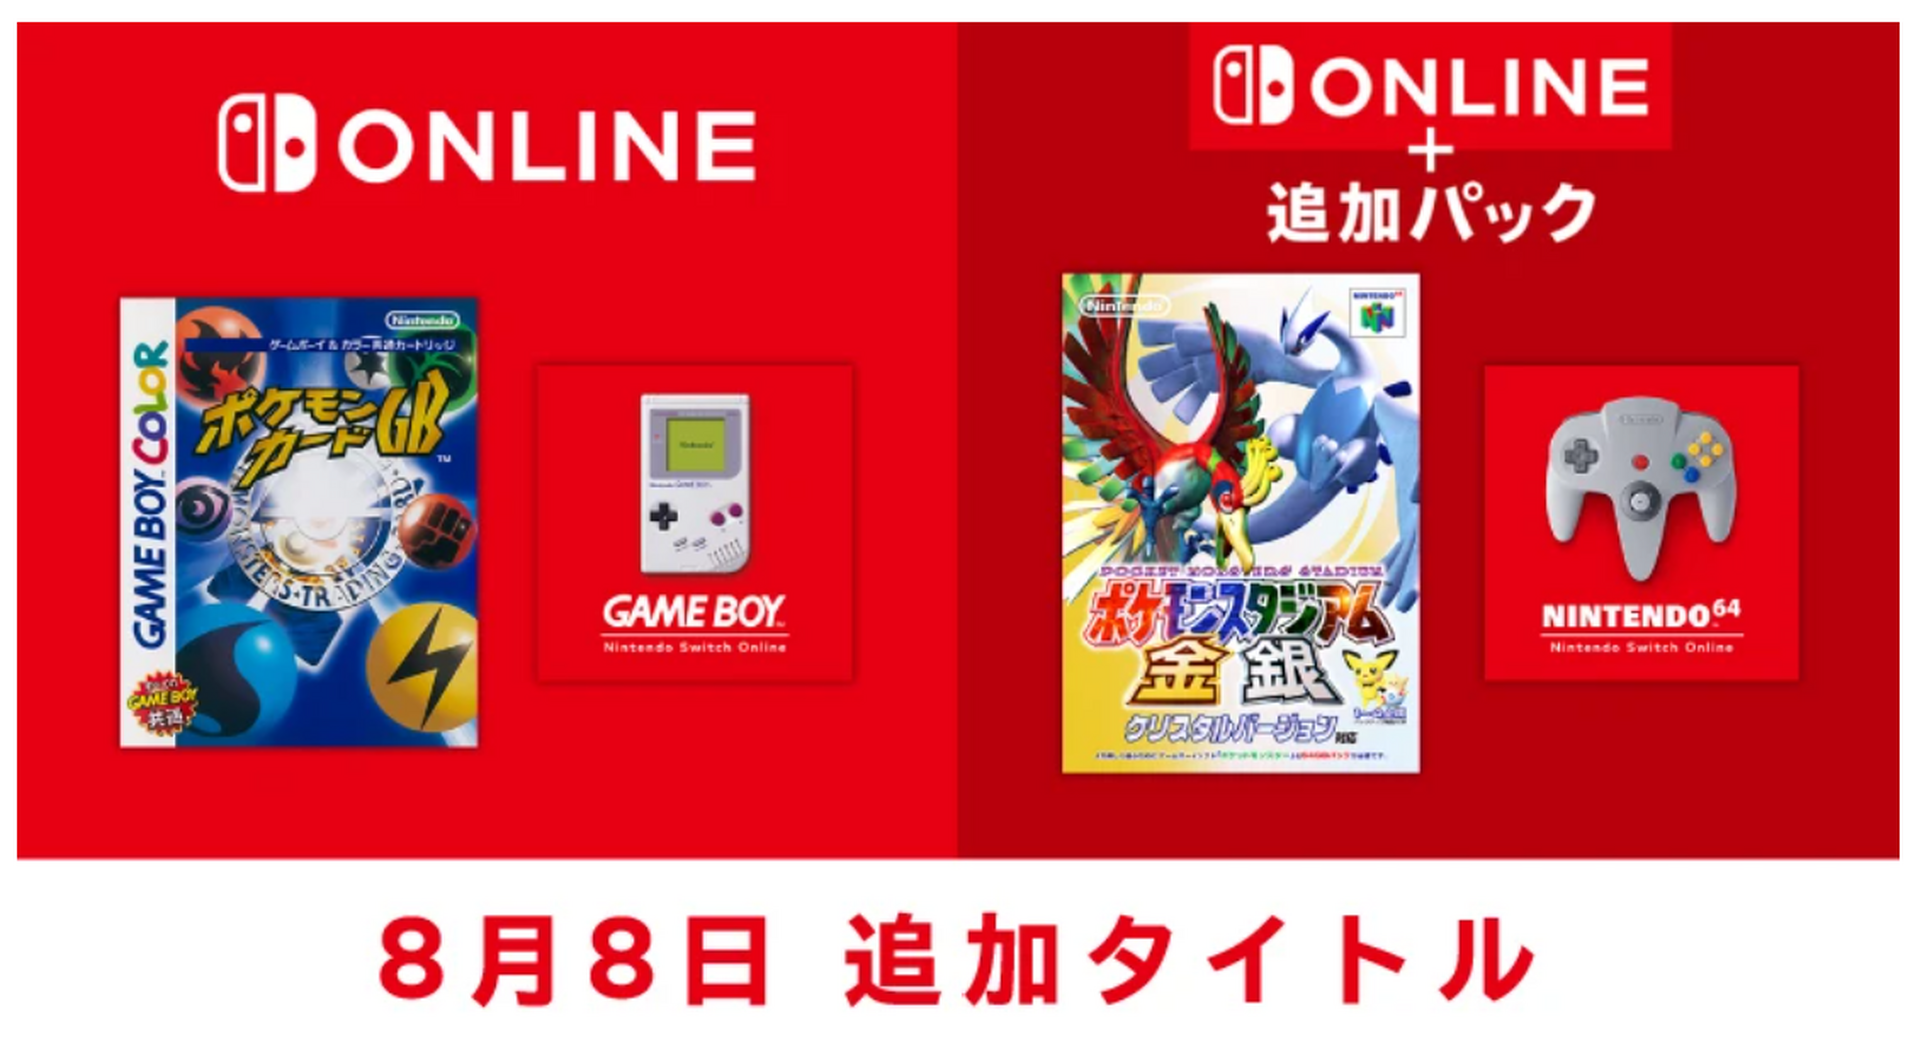 ポケモンカードGB』と『ポケモンスタジアム金銀』、Nintendo Switch